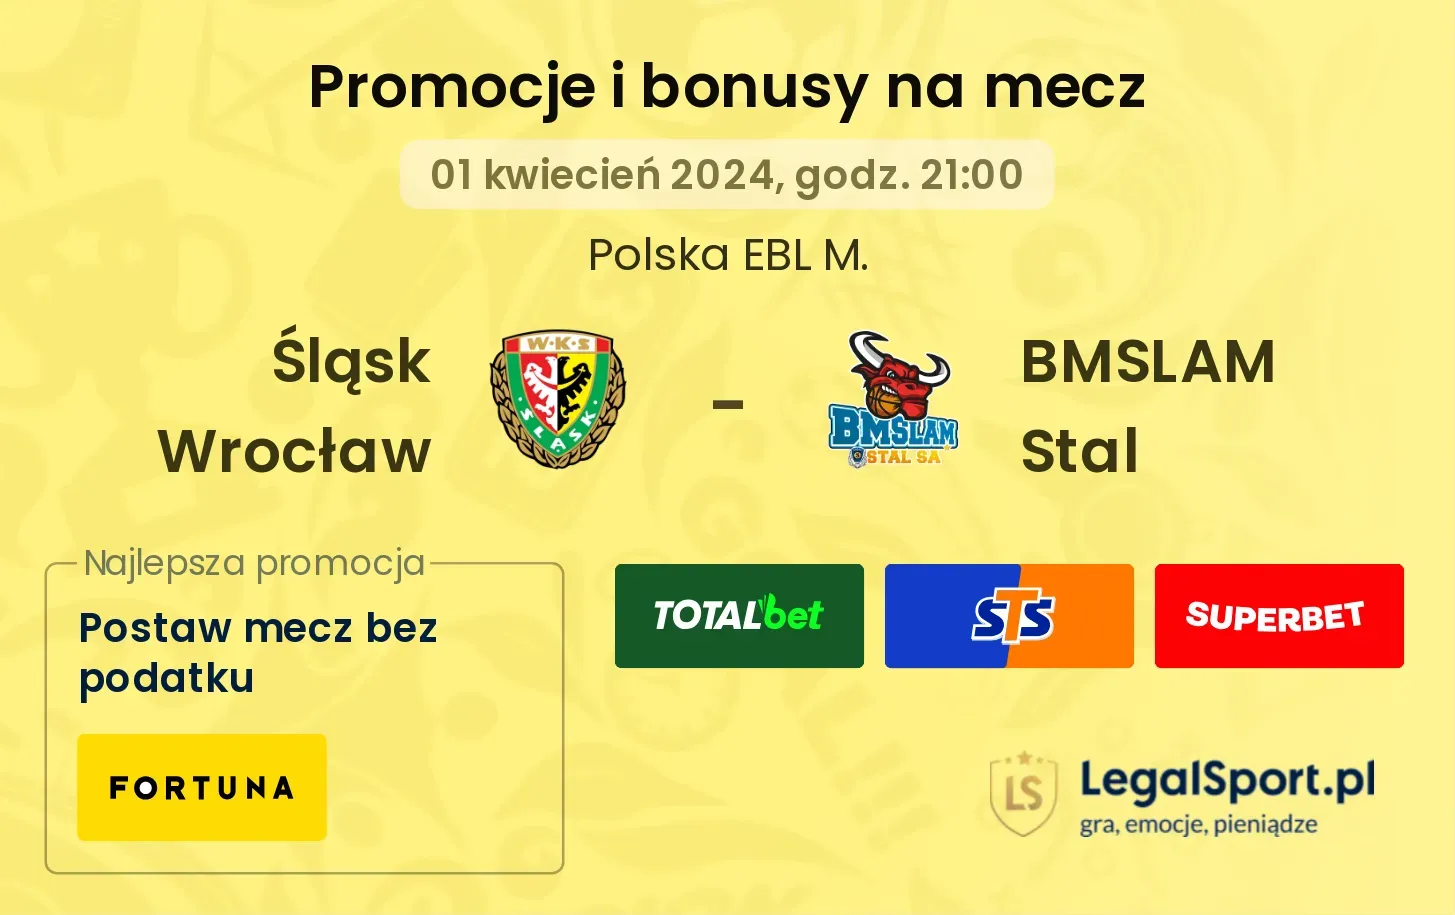 Śląsk Wrocław - BMSLAM Stal promocje bonusy na mecz